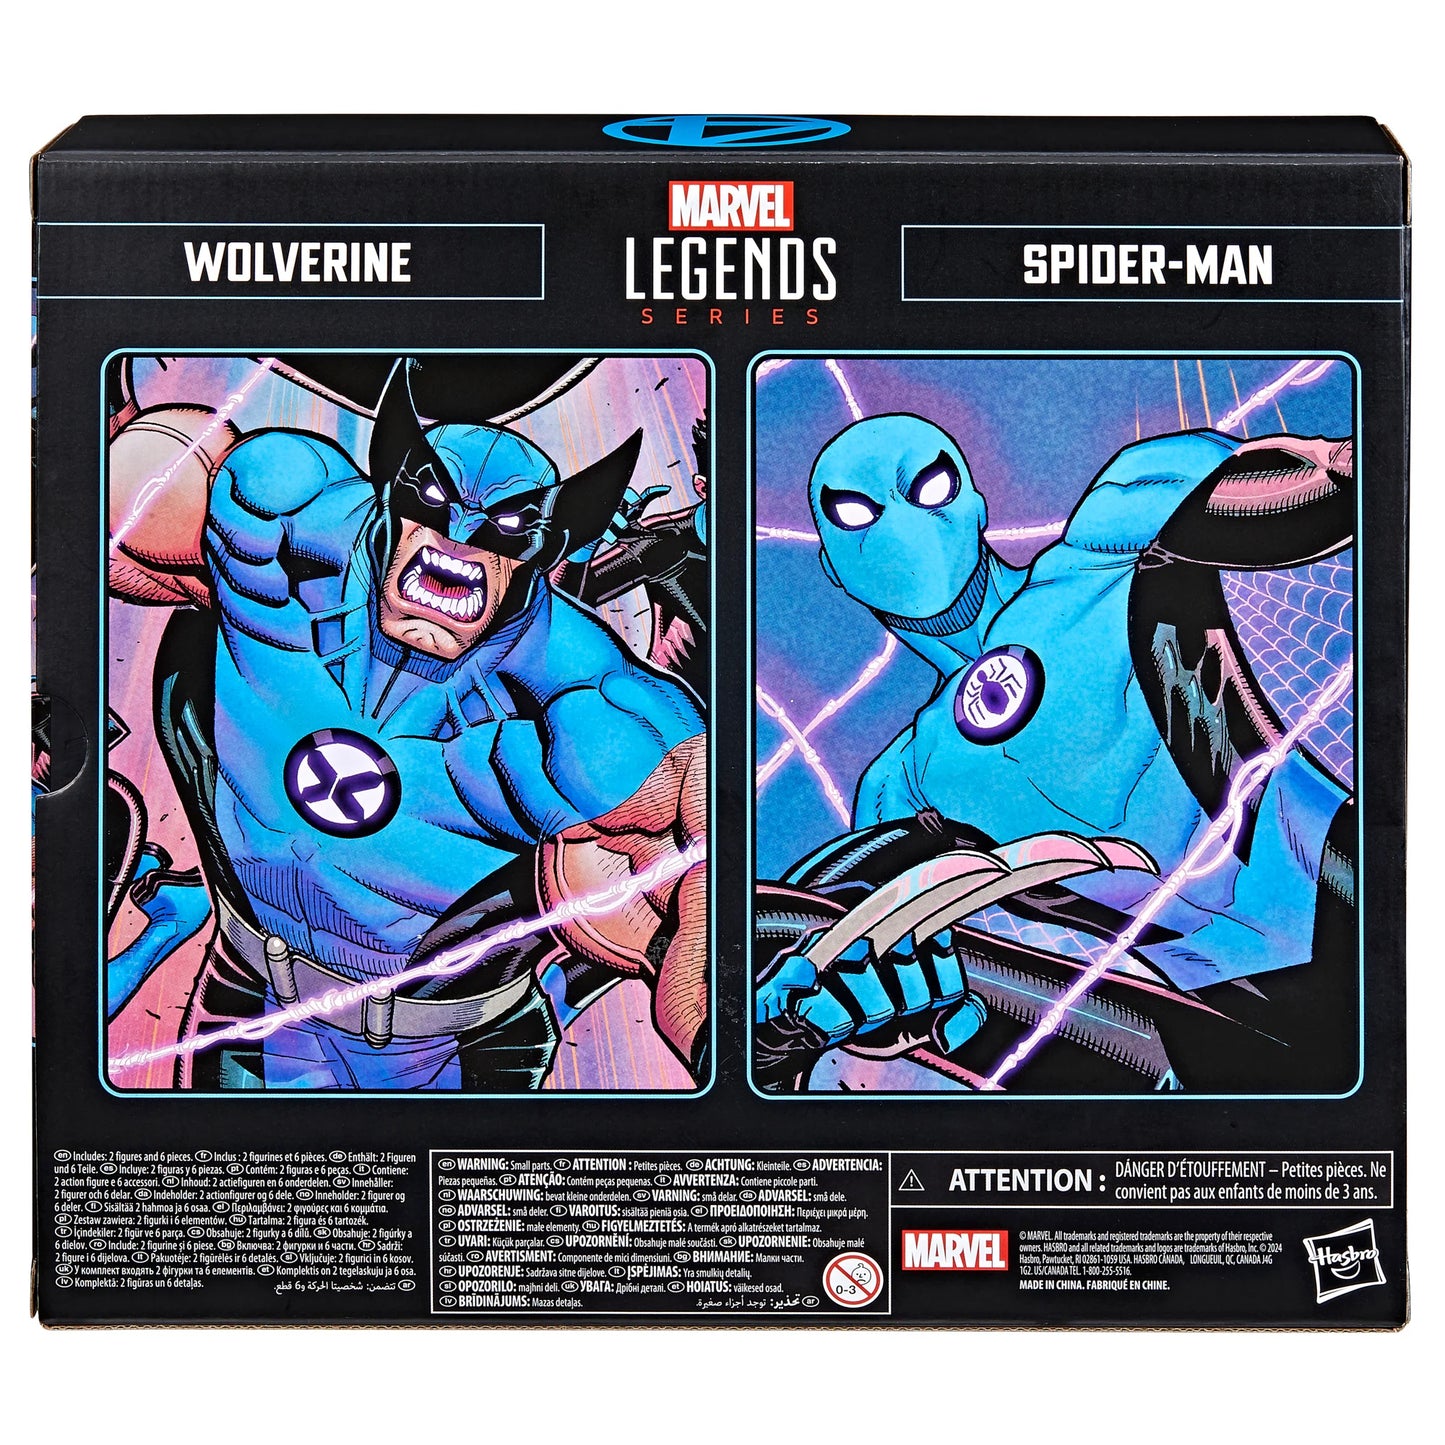 Marvel Legends Wolverine and Spider-Man 2 Pack